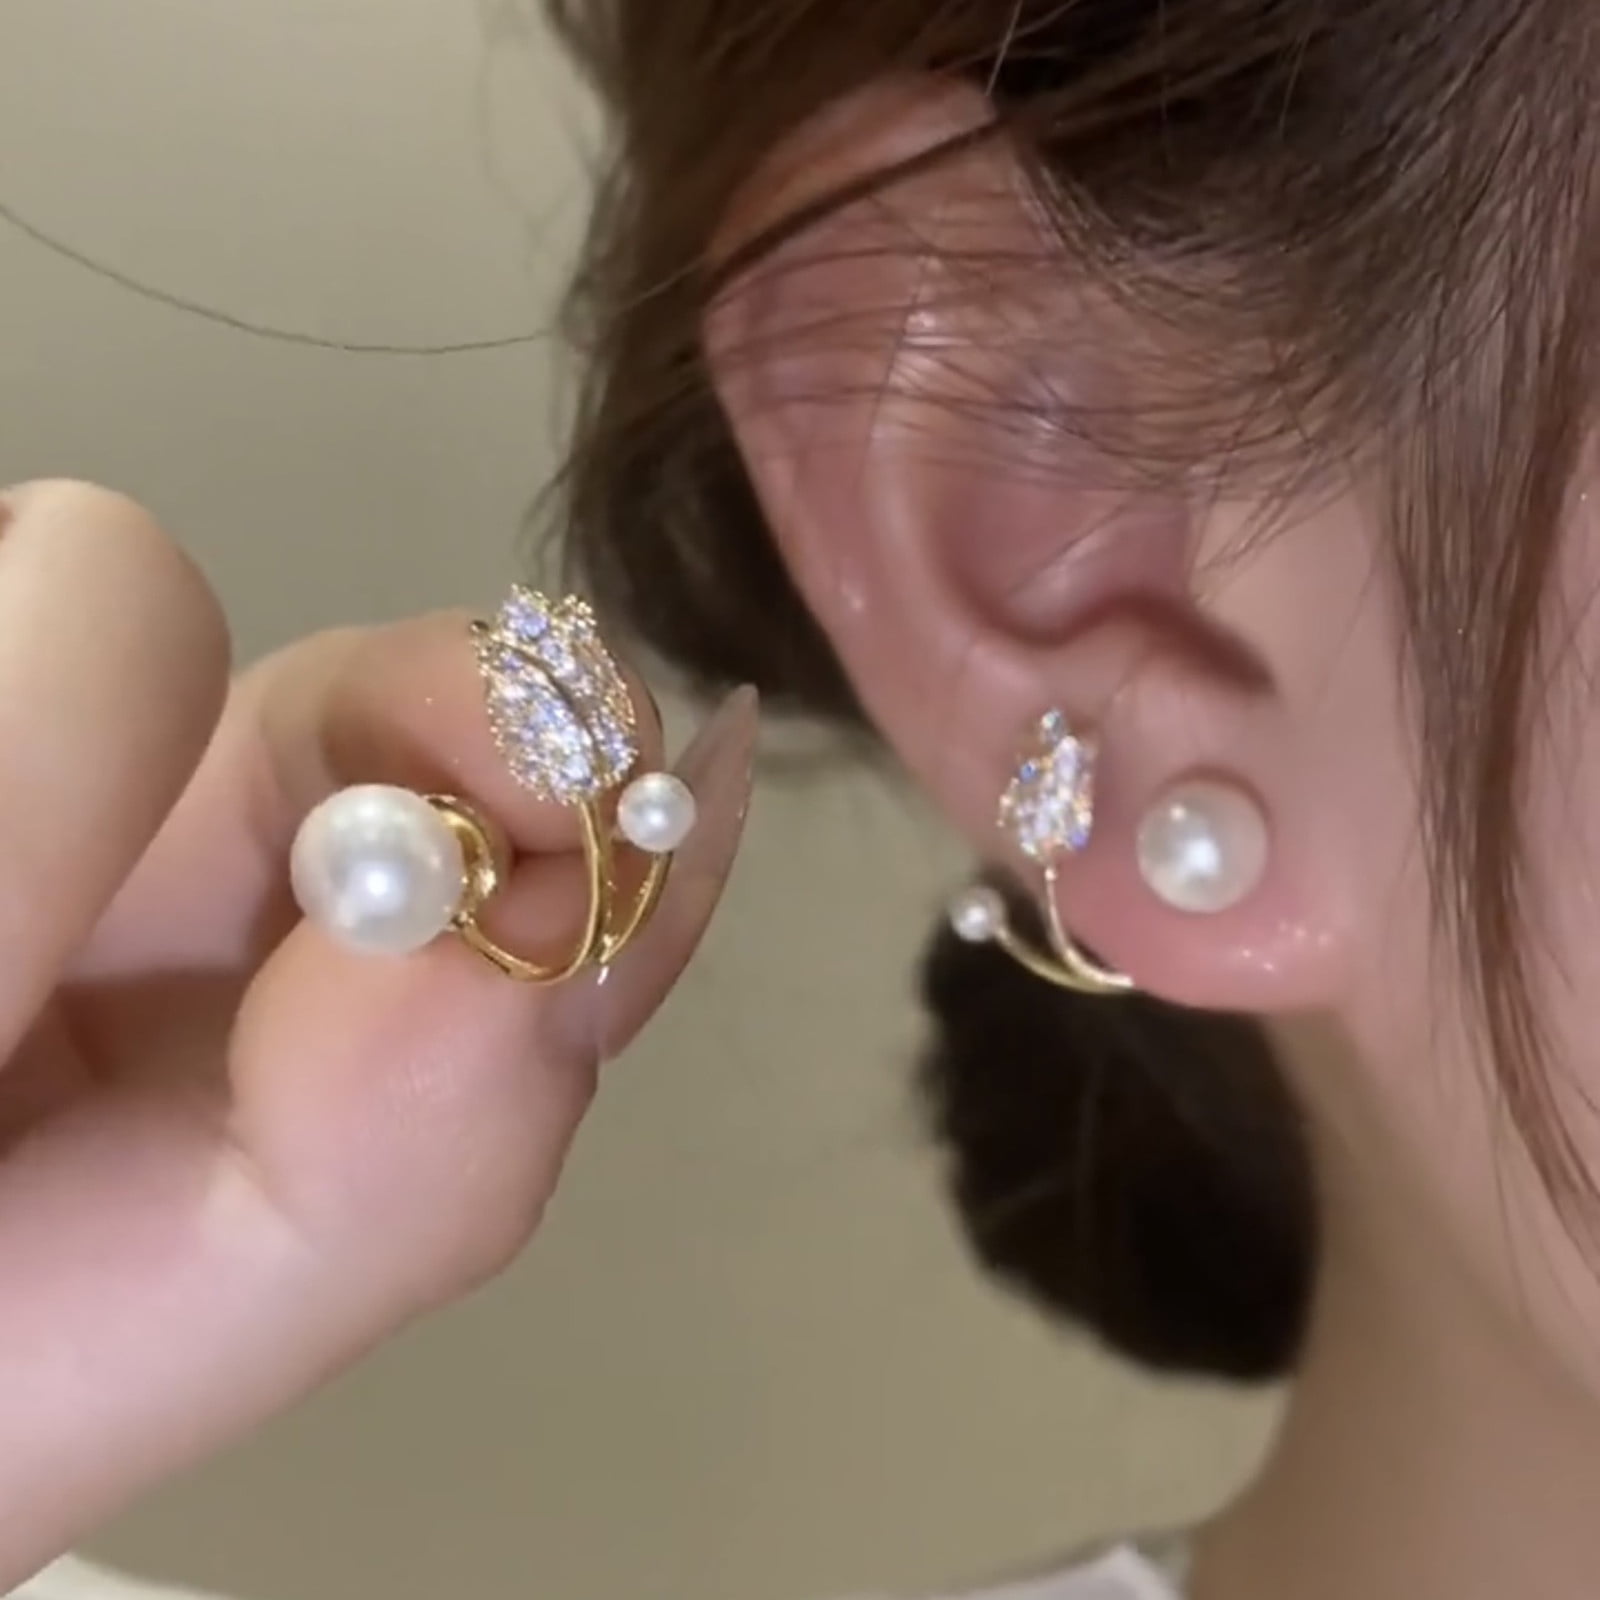 Details more than 254 gold diamond earrings for girls